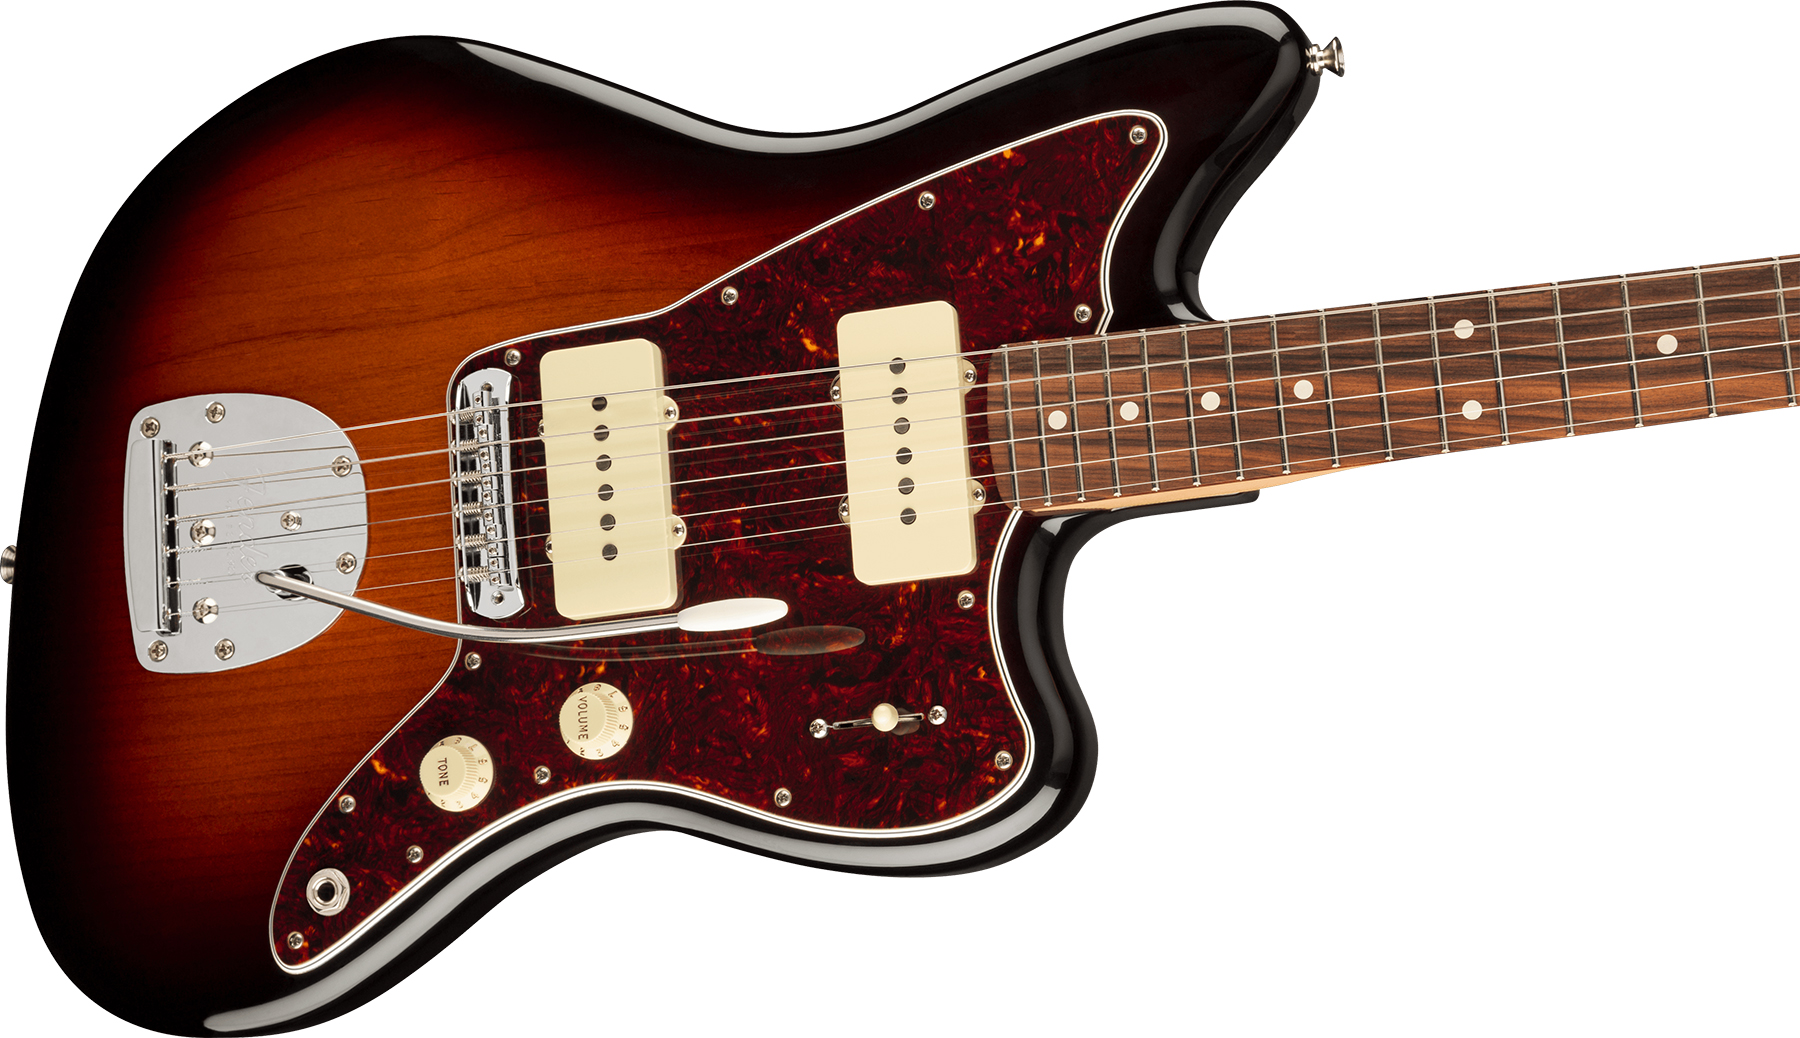 Fender Jazzmaster Player Ltd 2s Trem Pf - 3-color Sunburst - Guitarra electrica retro rock - Variation 2